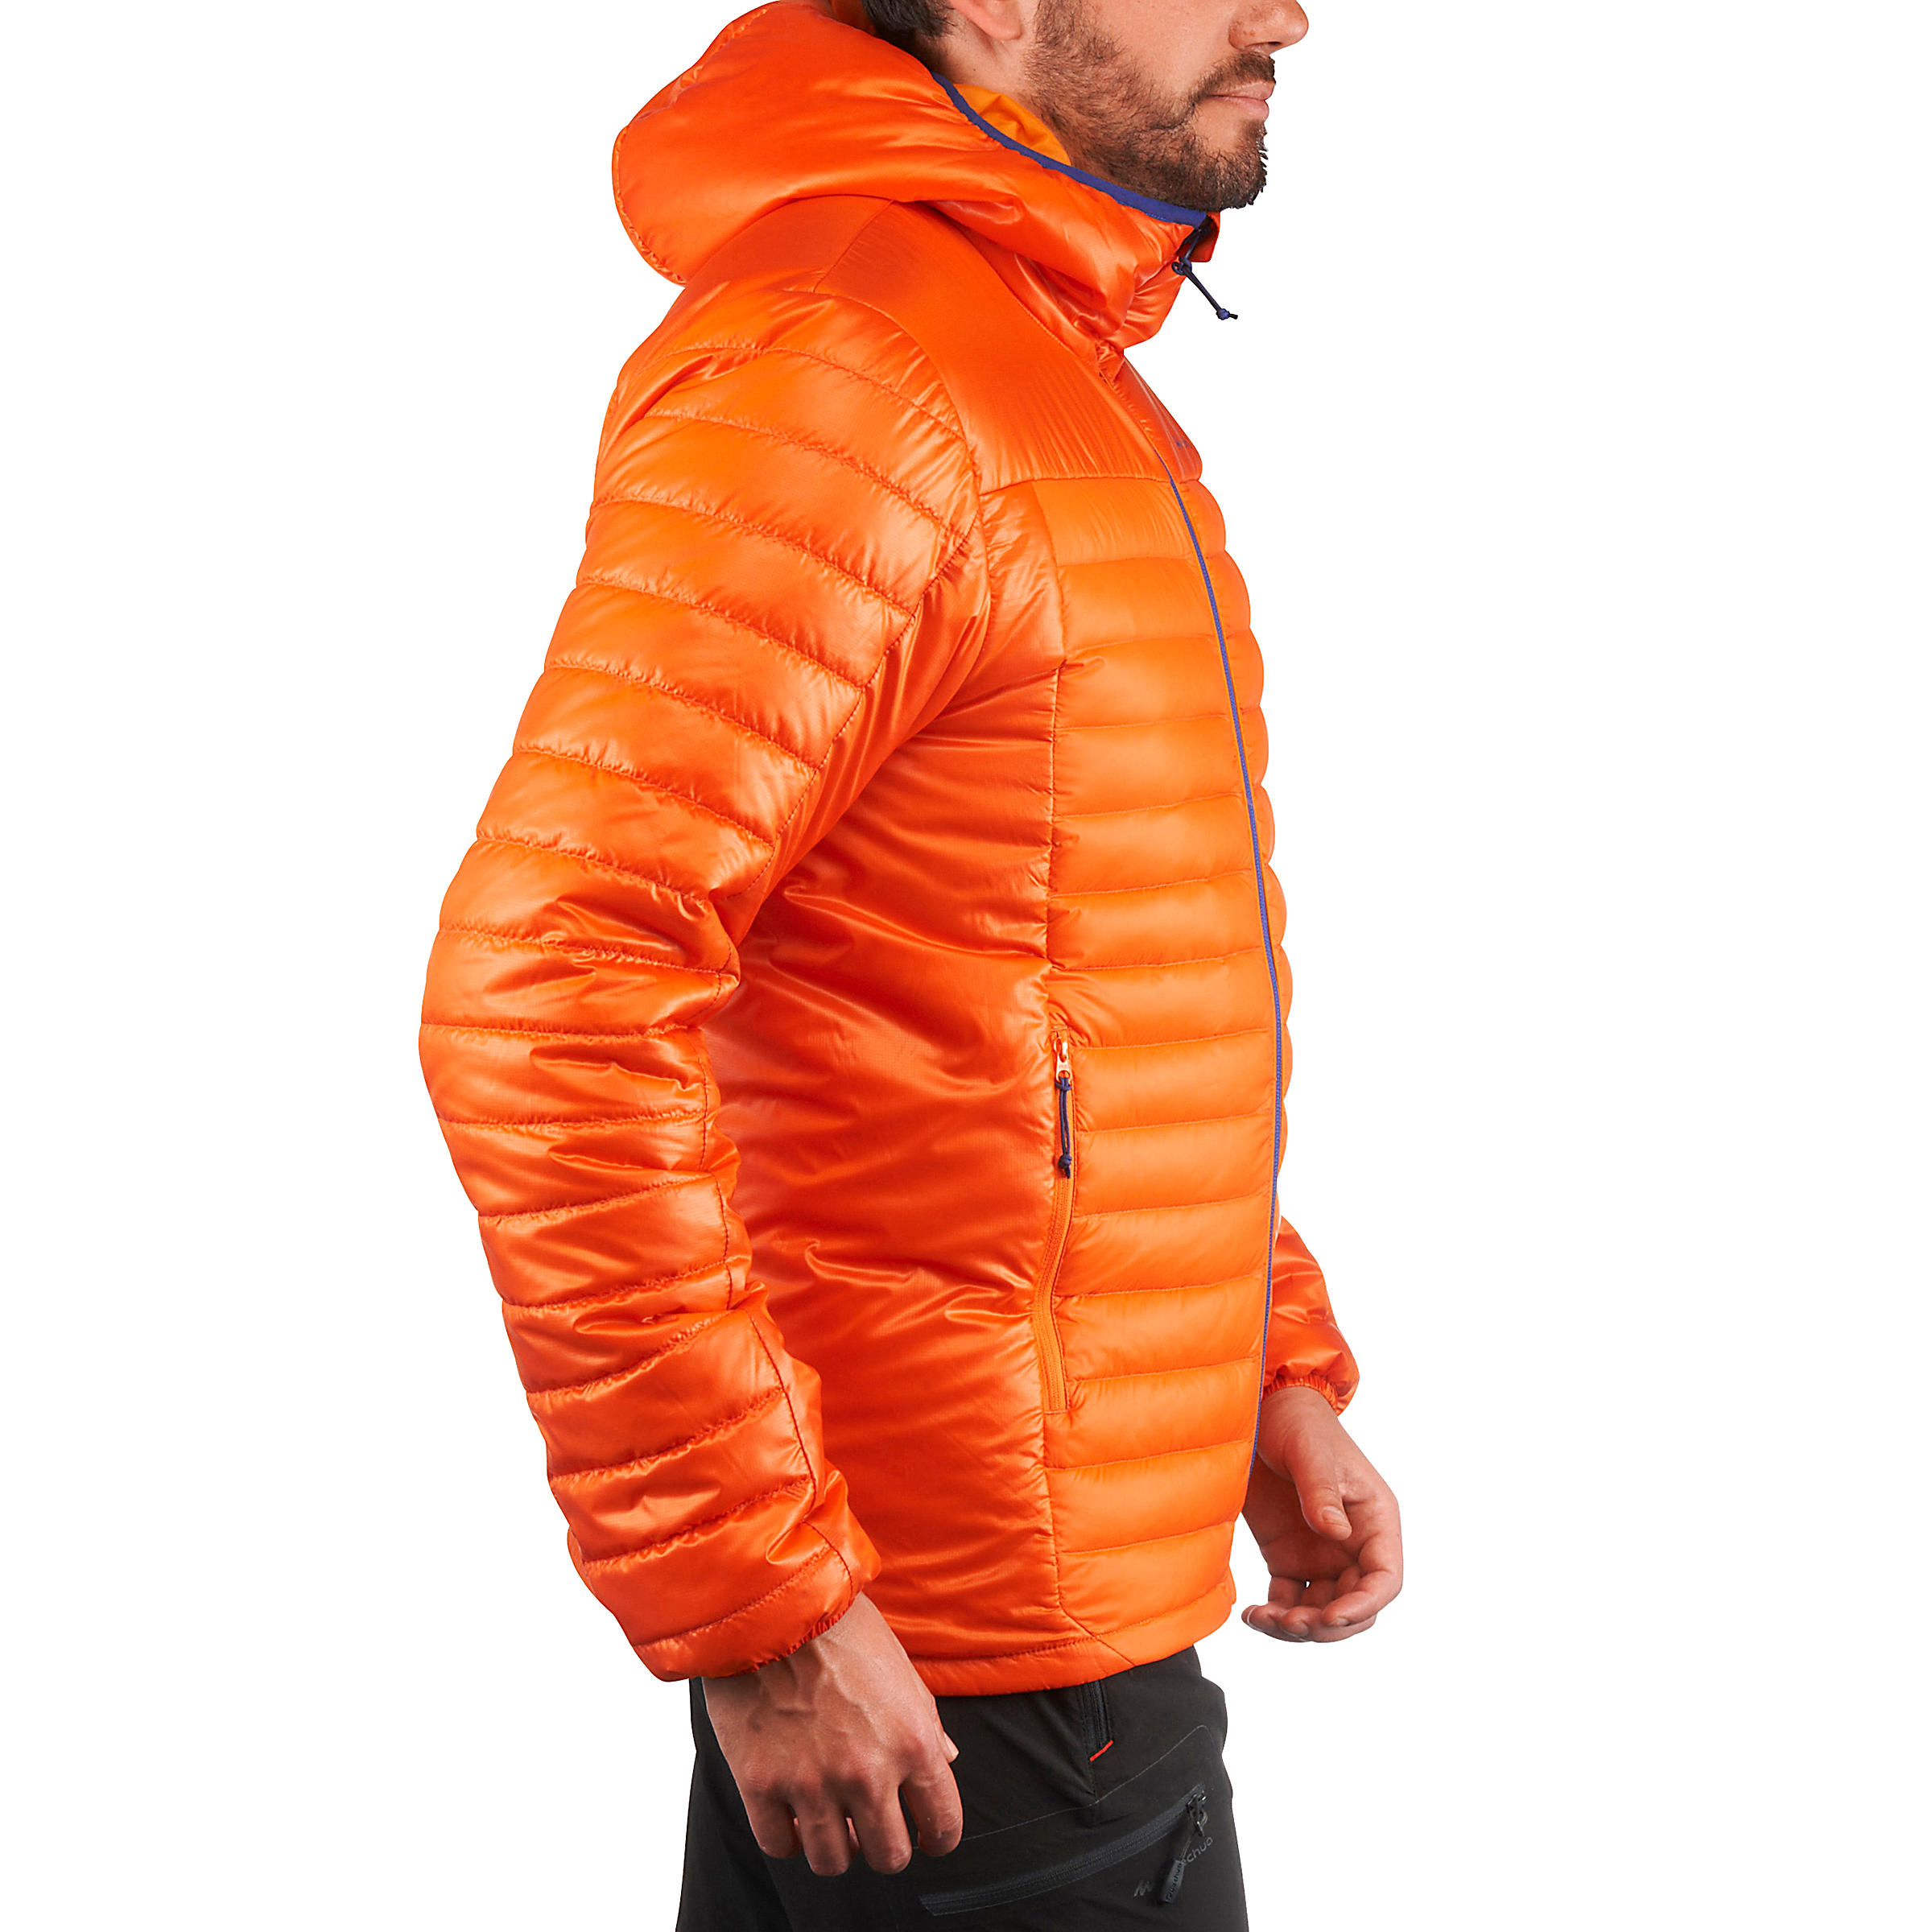 X-Light1 Men's Padded Hiking Jacket - Orange 15/17